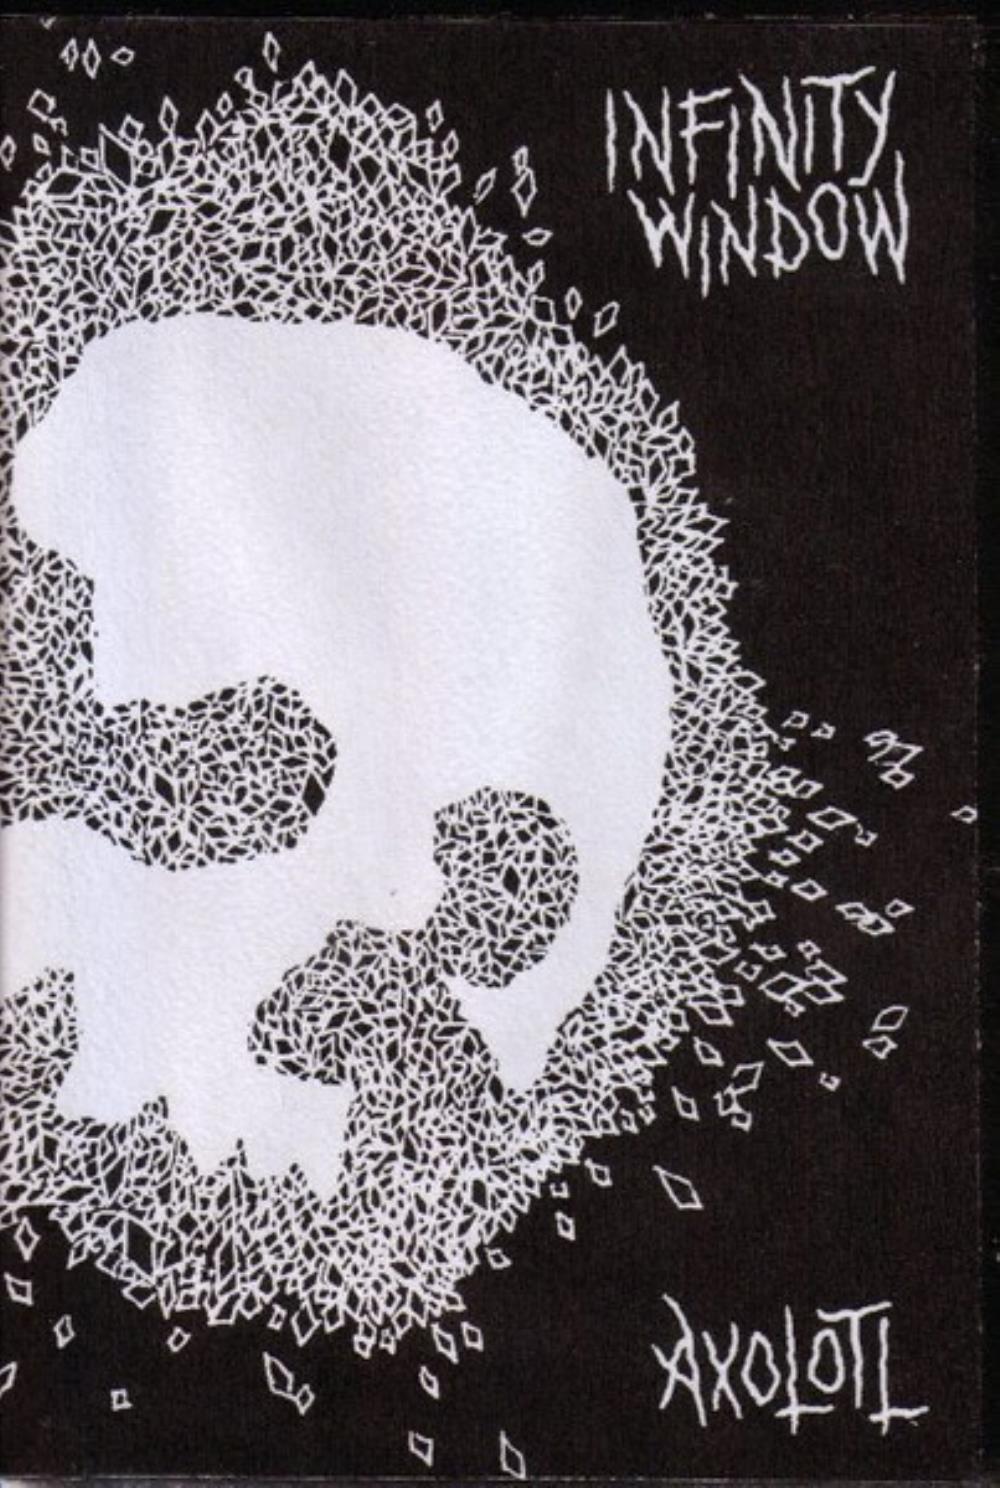 Infinity Window Axolotl / Infinity Window album cover